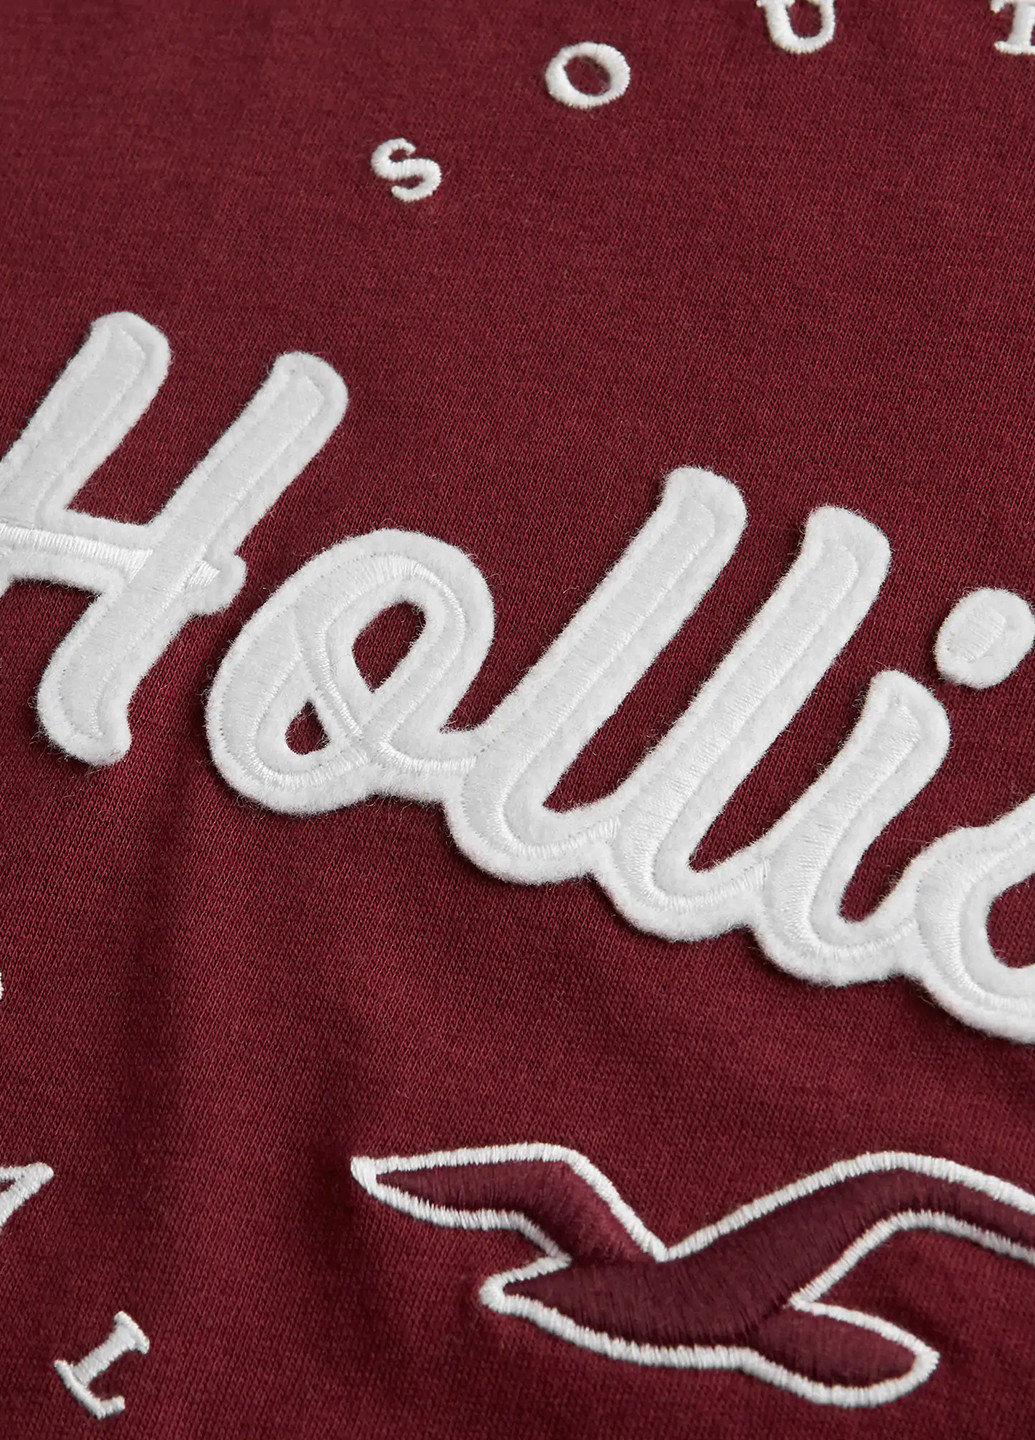 Бордова літня футболка Hollister